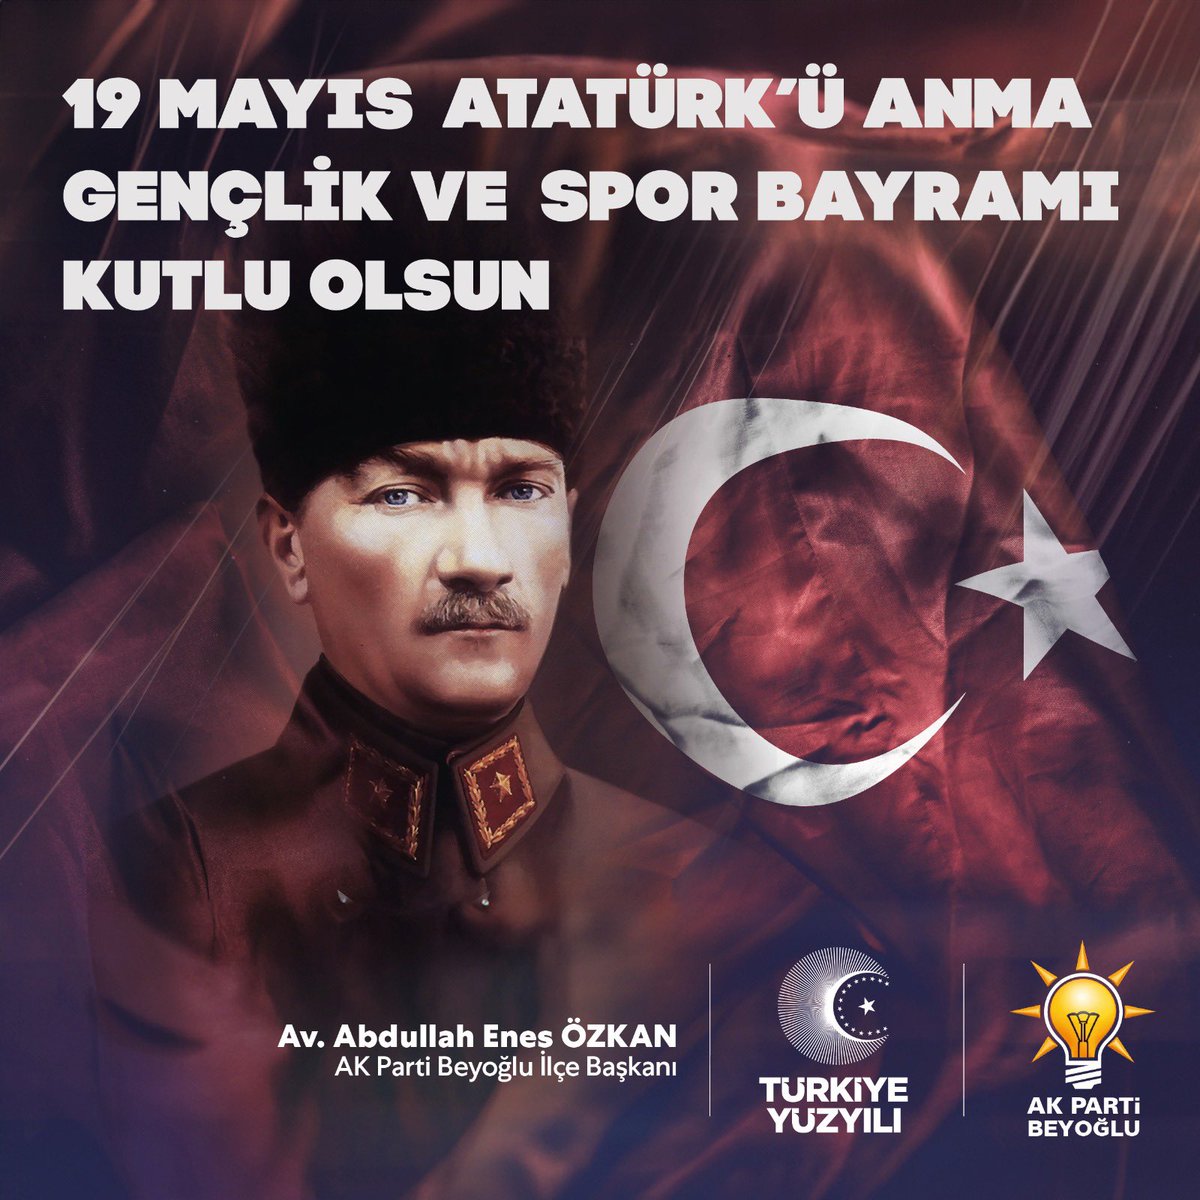 19 Mayıs Atatürk’ü Anma Gençlik ve Spor Bayramı’nı içtenlikle kutluyor; Bu vesile ile tüm şehitlerimizi ve gazilerimizi saygı ve rahmetle anıyoruz.